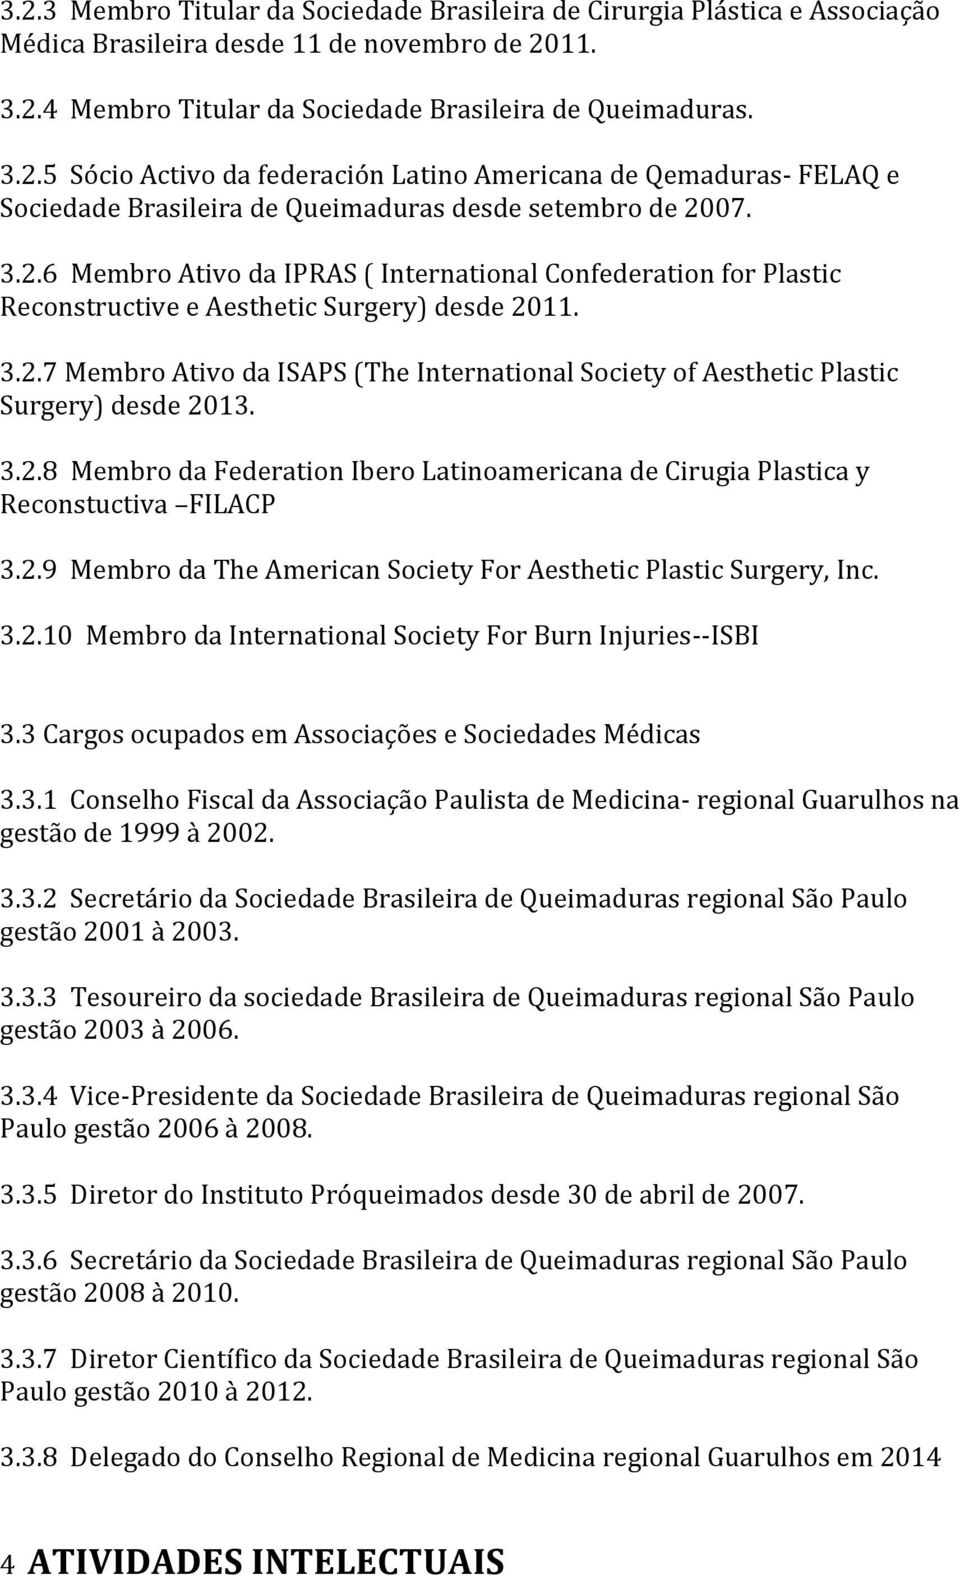 3.2.8 Membro da Federation Ibero Latinoamericana de Cirugia Plastica y Reconstuctiva FILACP 3.2.9 Membro da The American Society For Aesthetic Plastic Surgery, Inc. 3.2.10 Membro da International Society For Burn Injuries--ISBI 3.